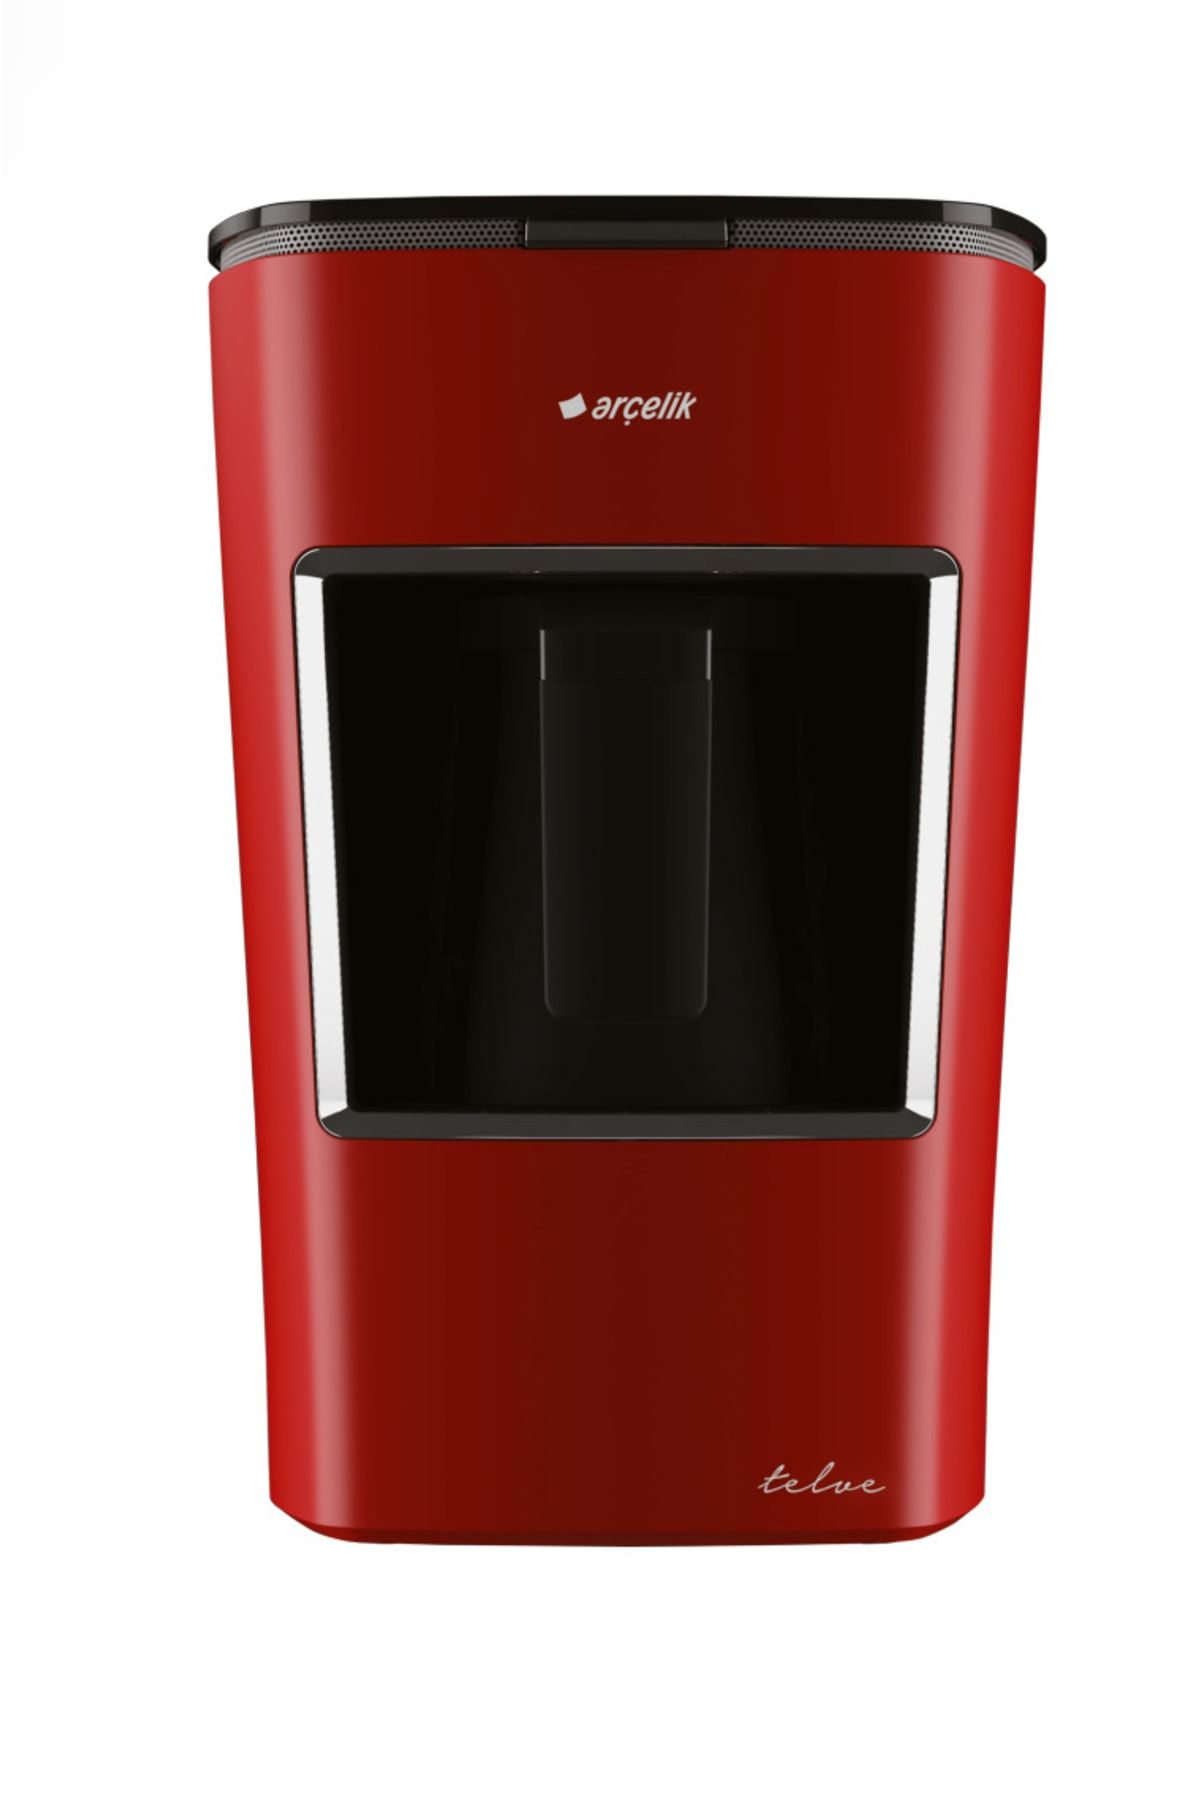 Arçelik K Mini Telve Kırmızı Türk Kahve Makinesi